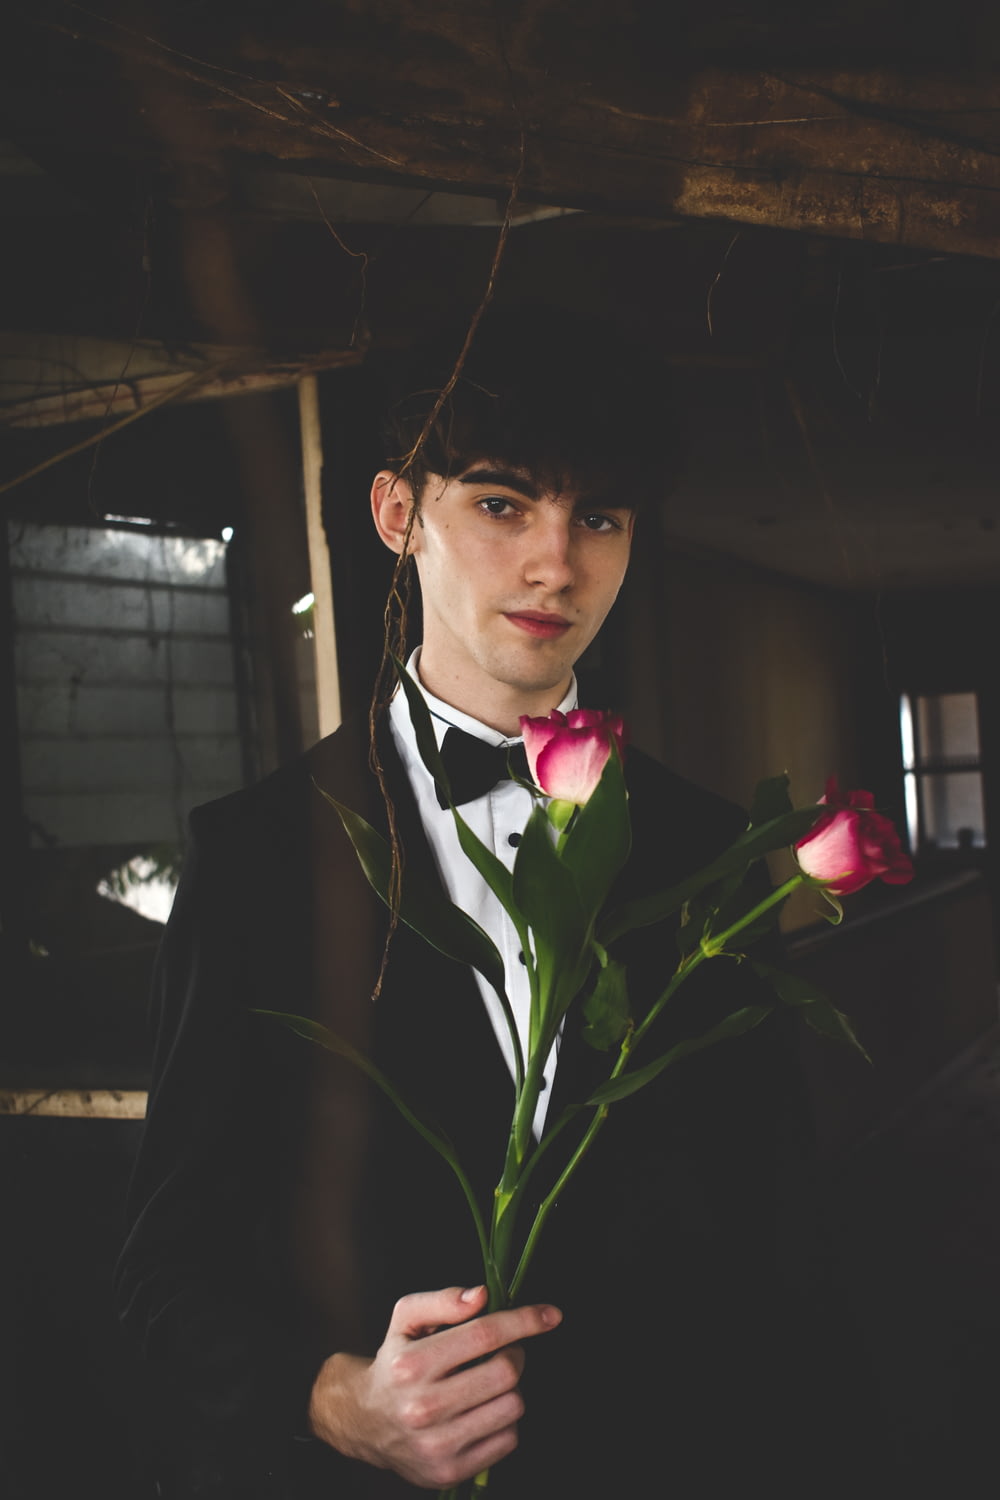 Mann in schwarz-weißem Anzug mit zwei roten Rosen